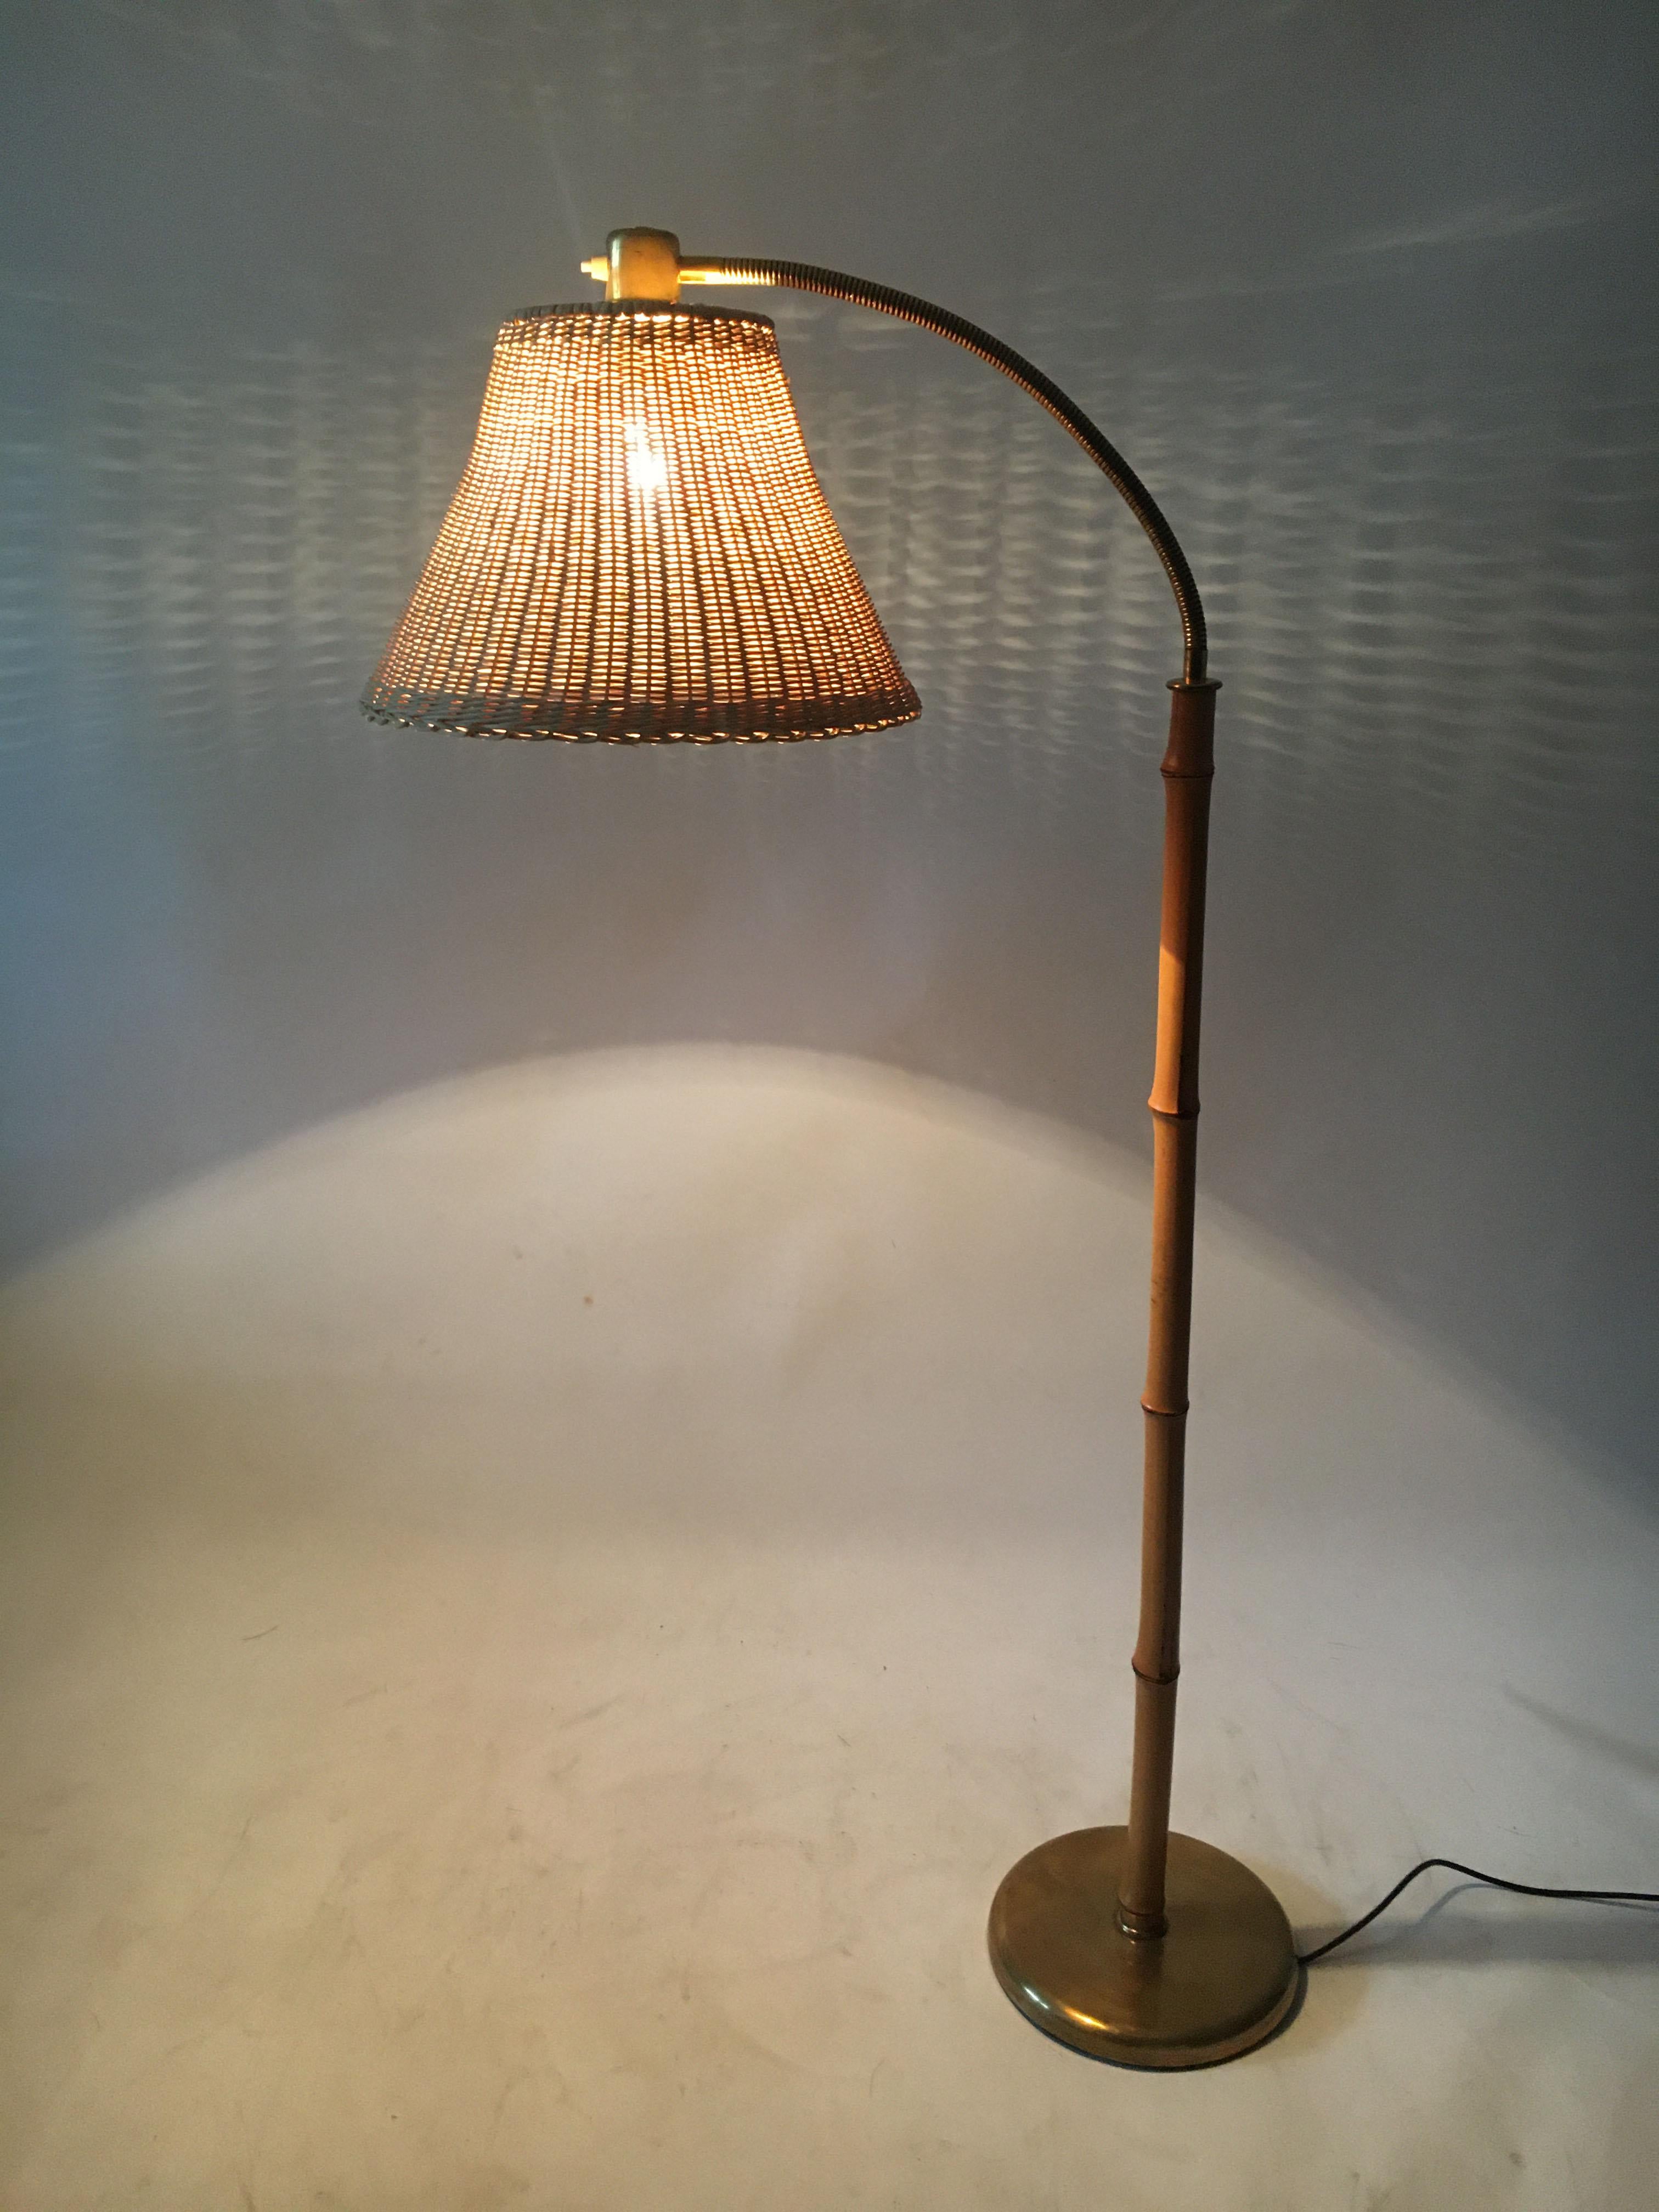 Kalmar Josef Frank floor lamp bamboo brass, Austria, 1950s.